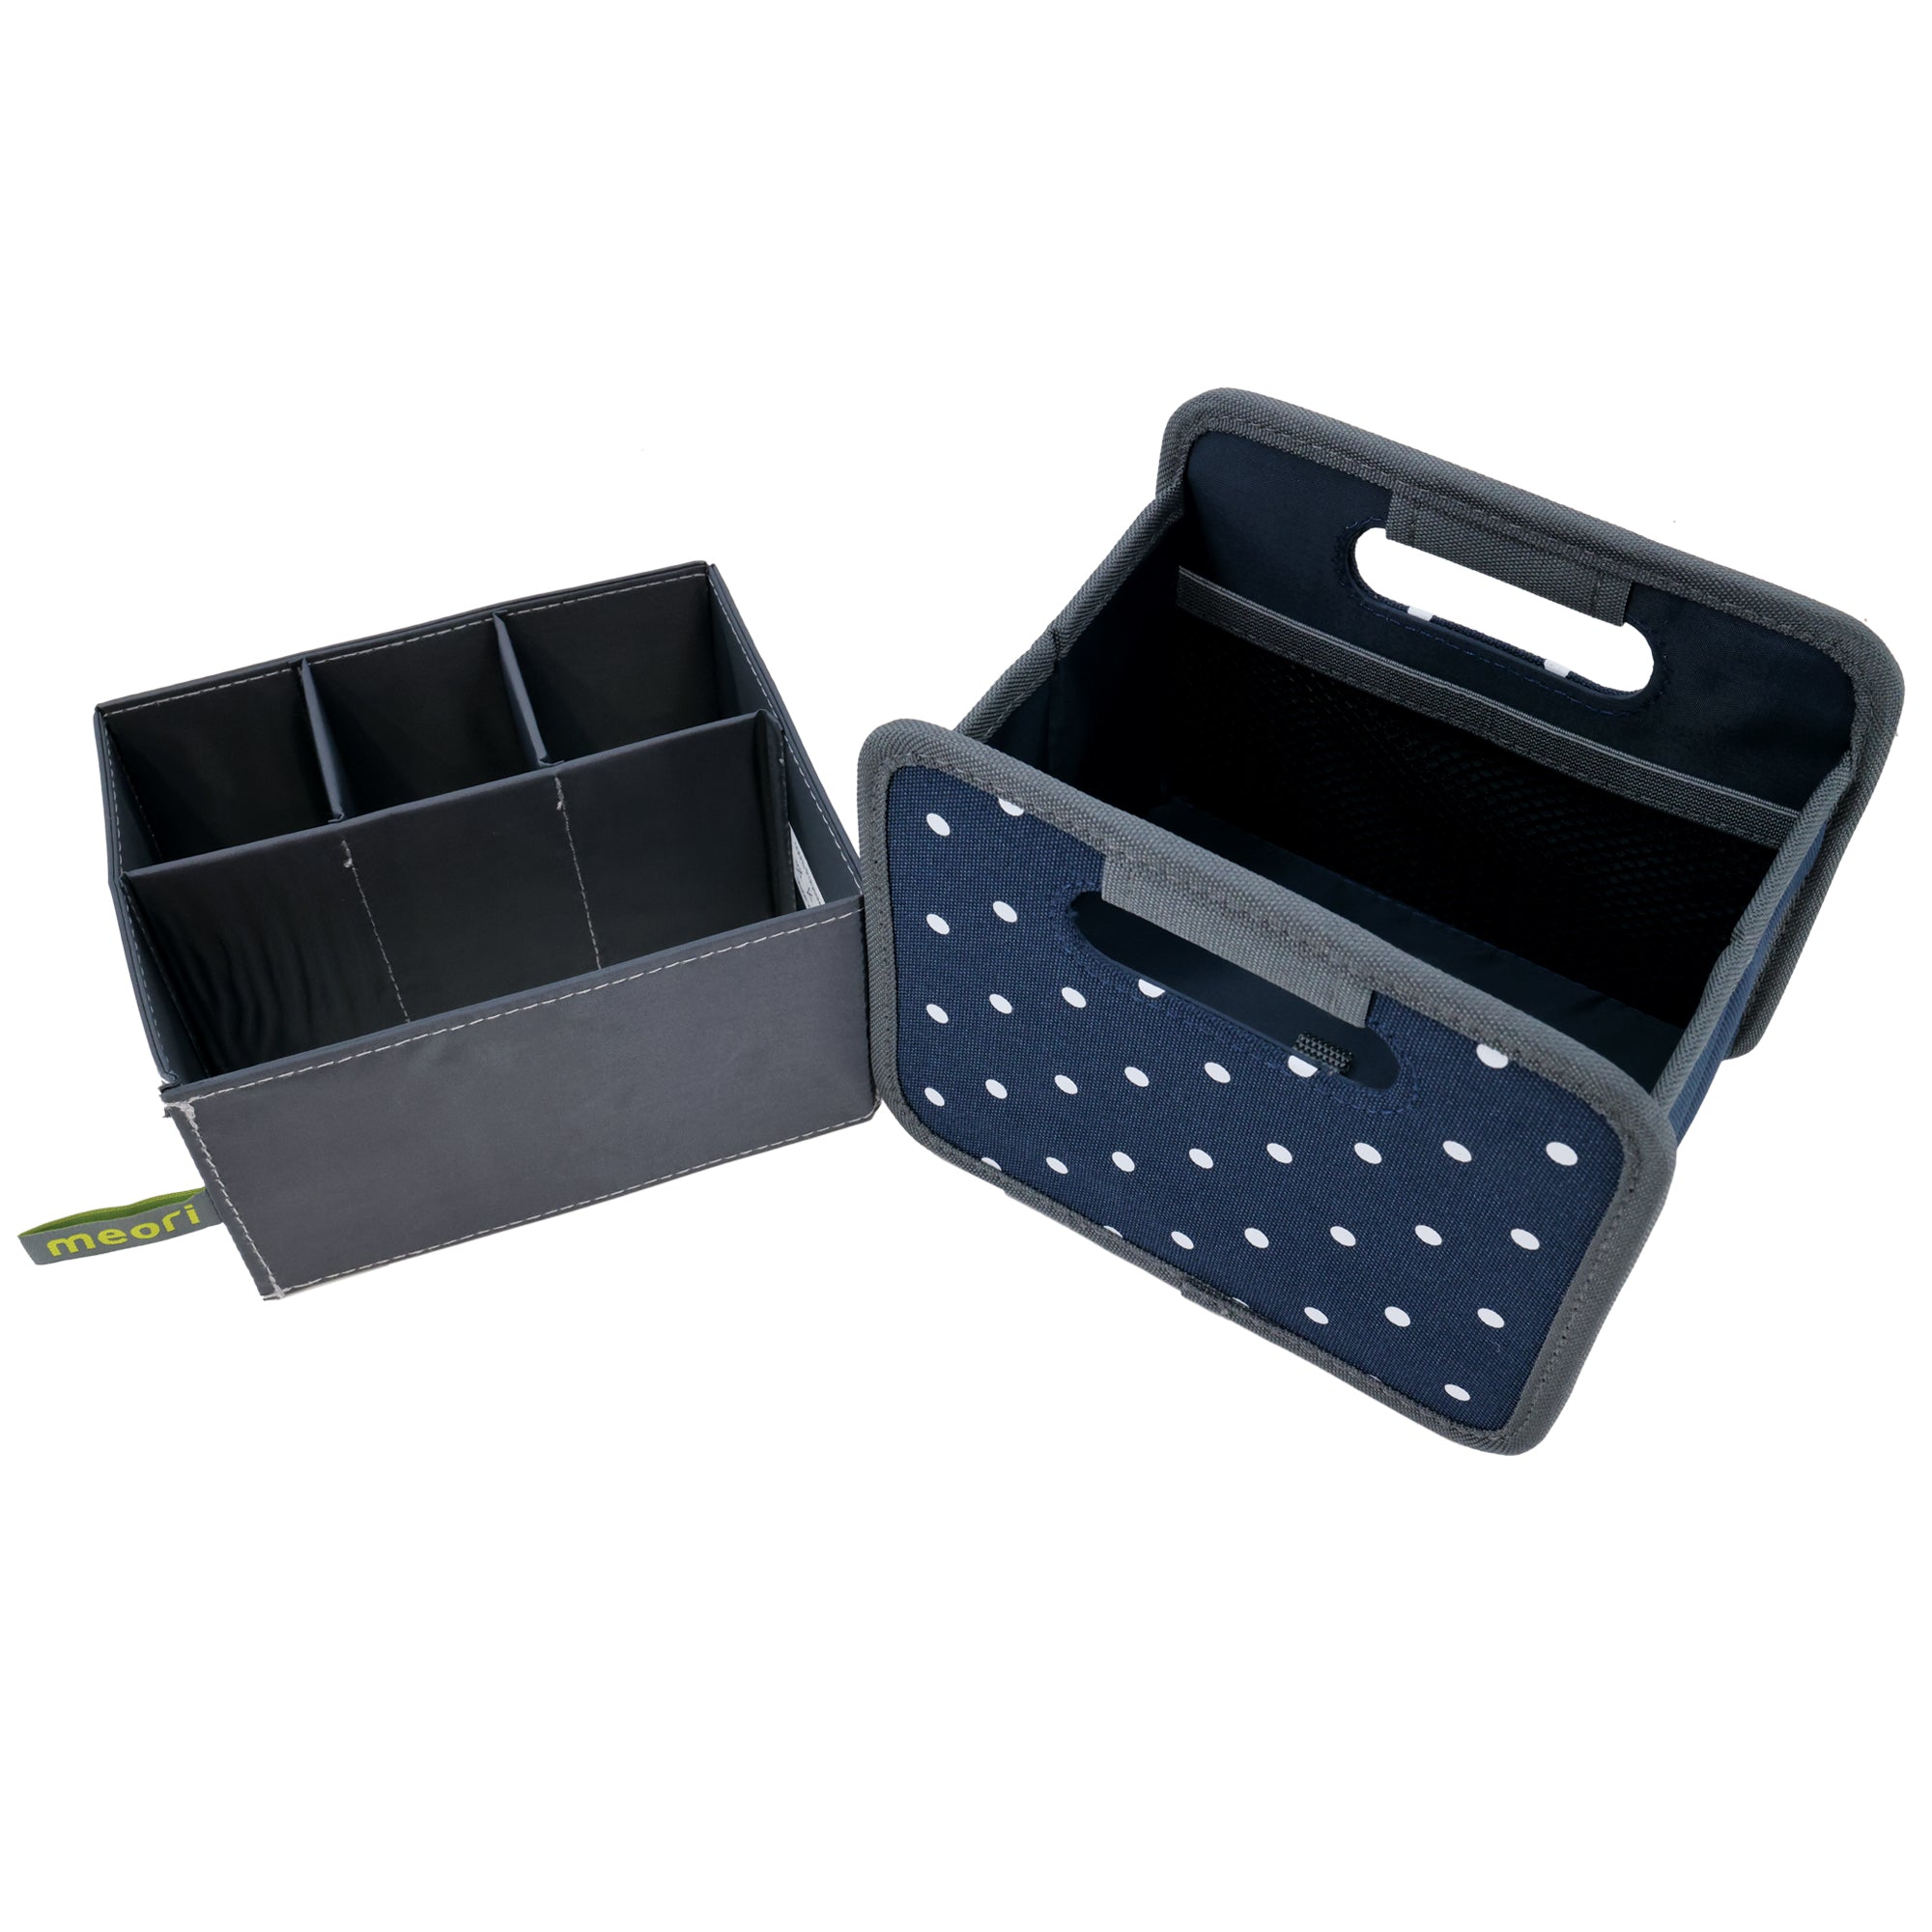 Desk Storage Box | Mini Box With Insert | Shop meori